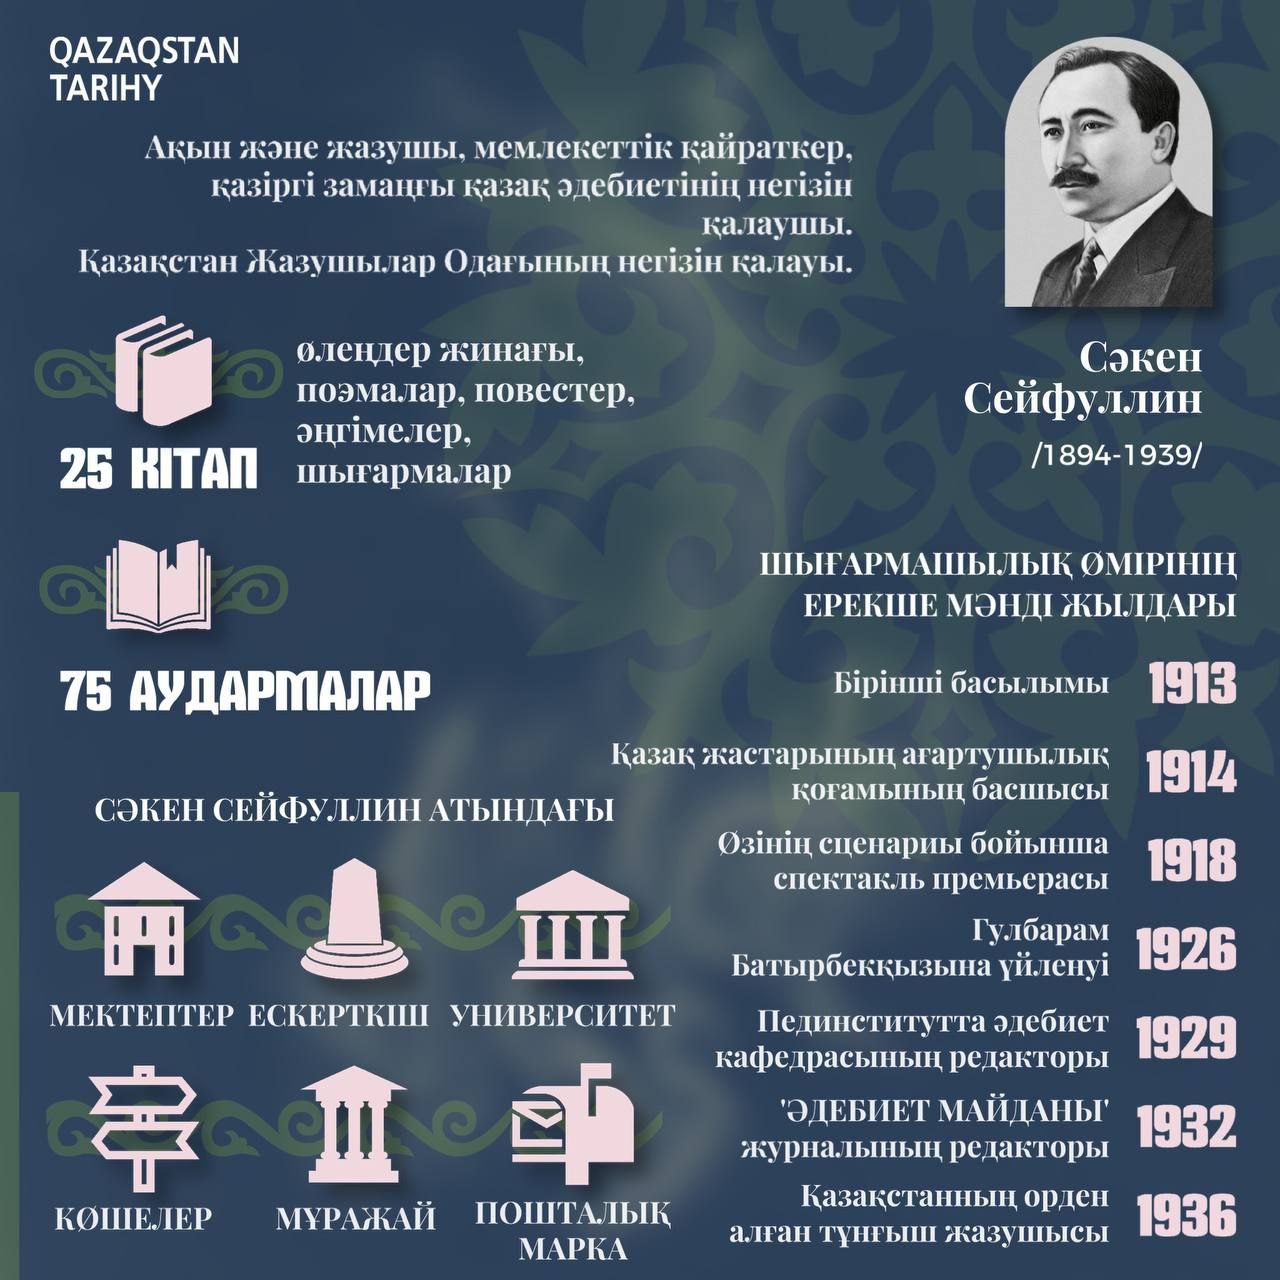 Сәкен Сейфуллин (Инфографика)